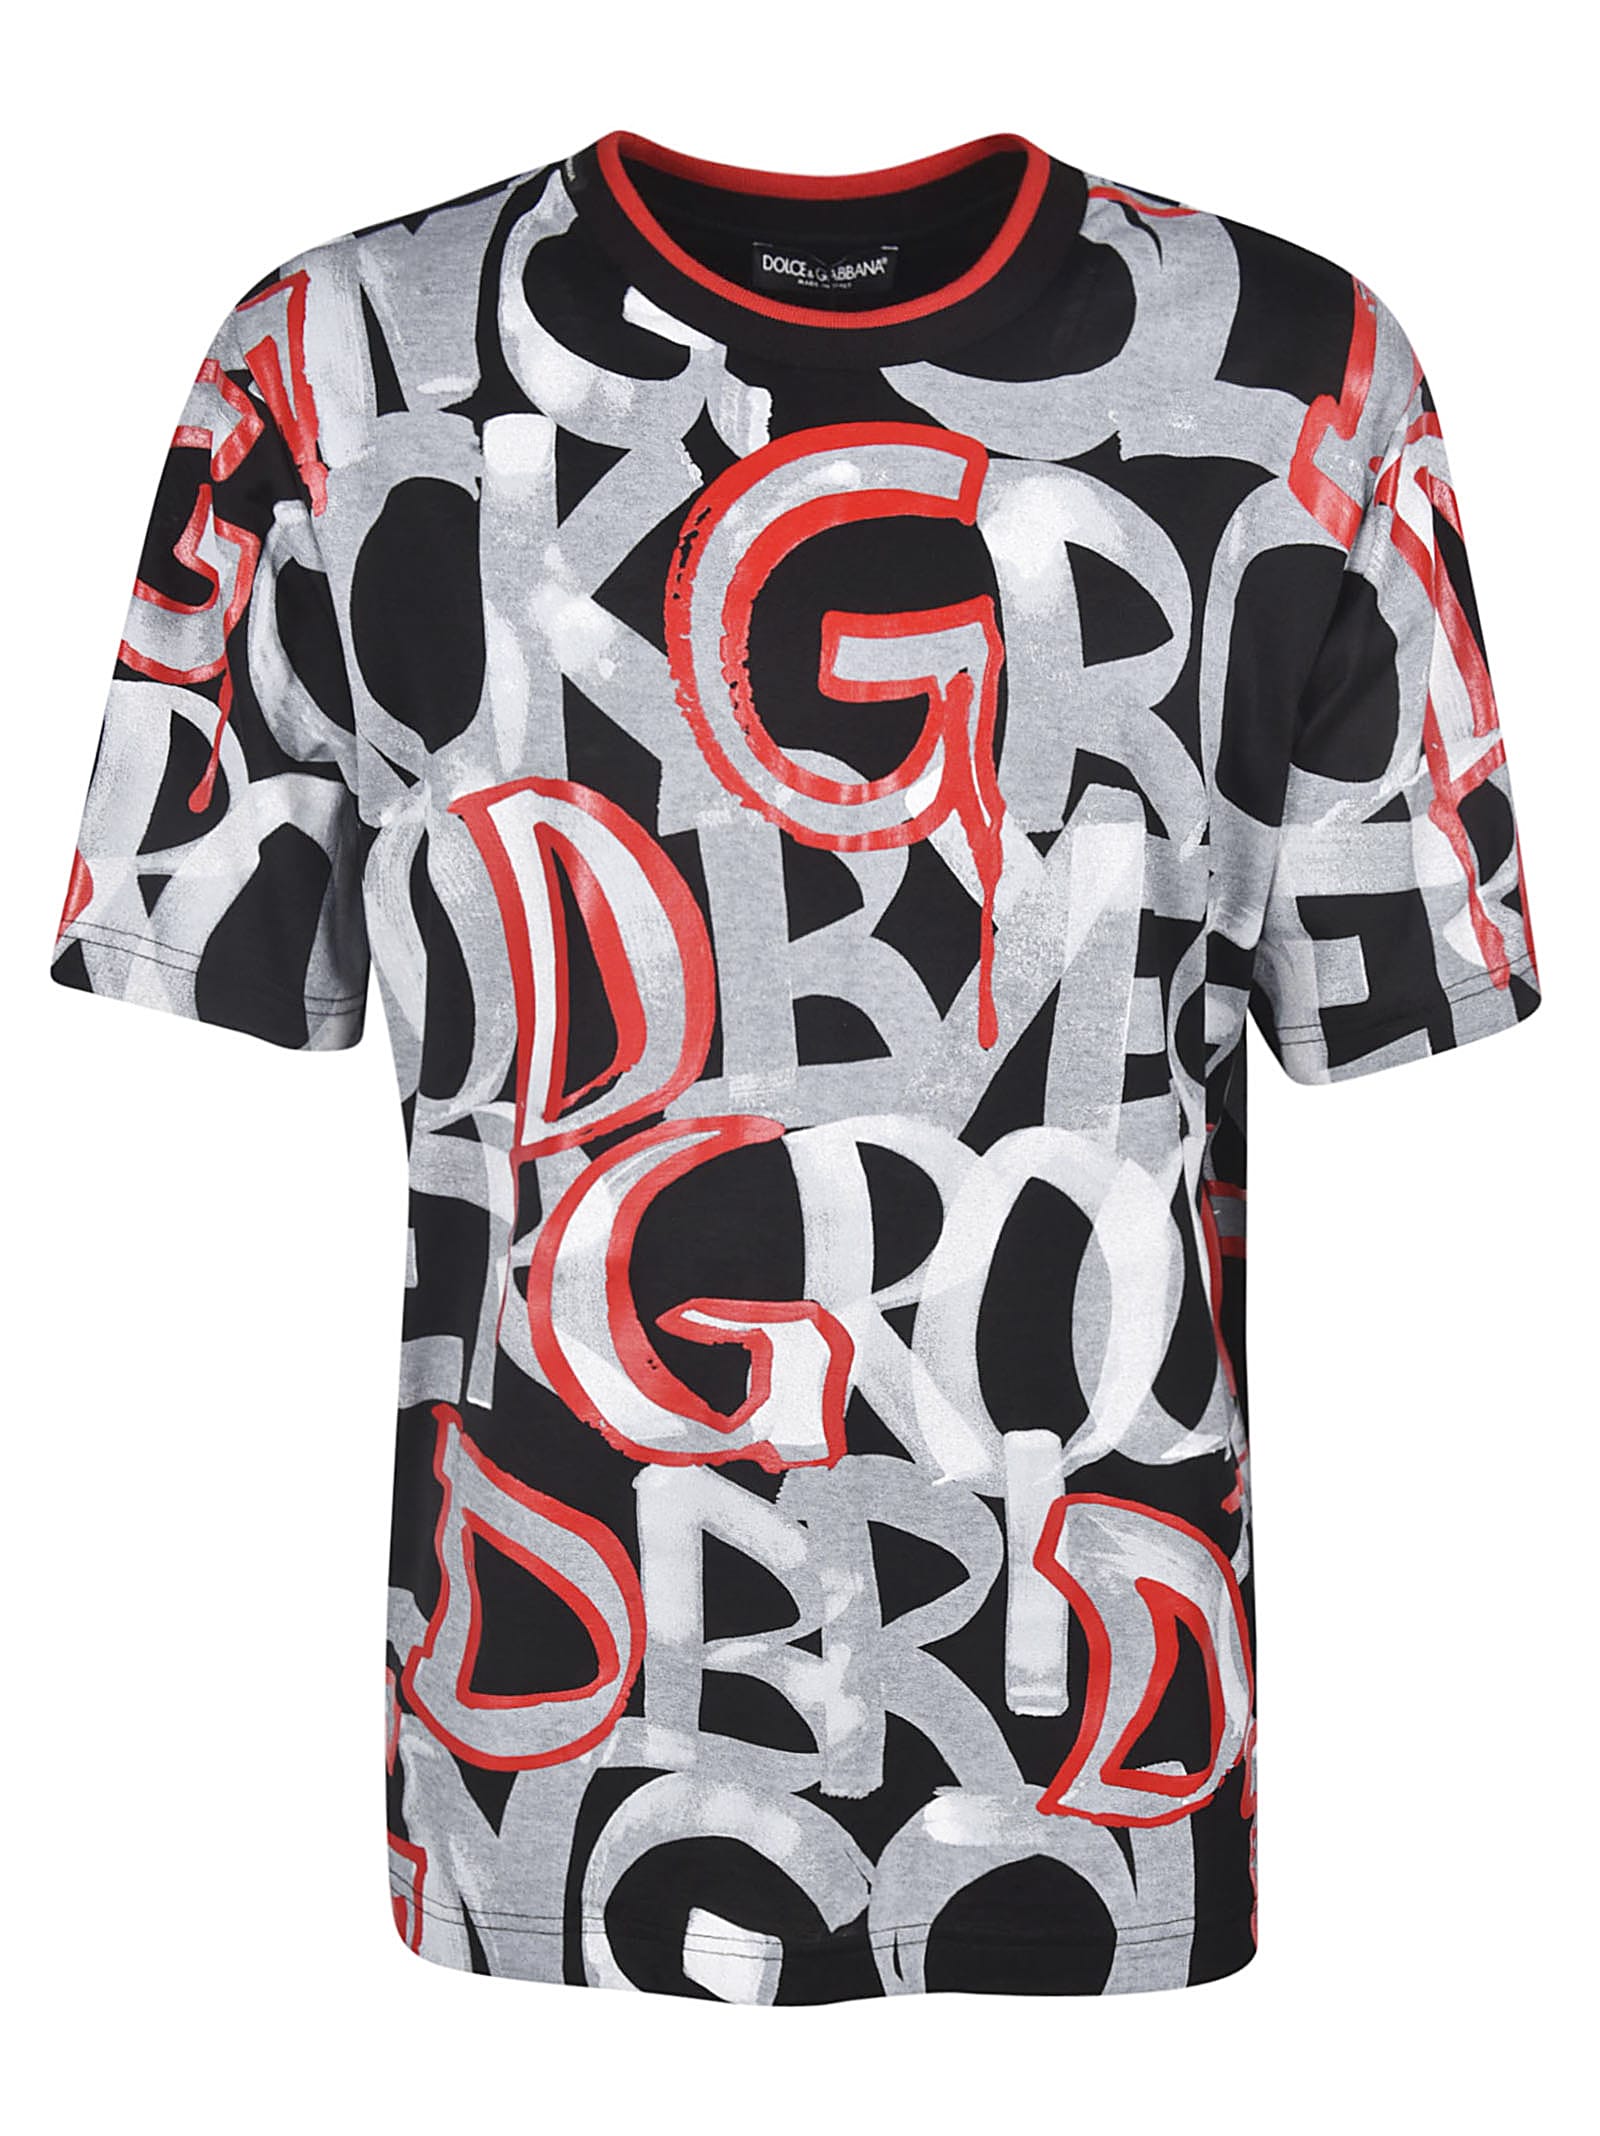 Dolce & Gabbana Dolce & Gabbana Graffiti Logo T-shirt - Nero rosso ...